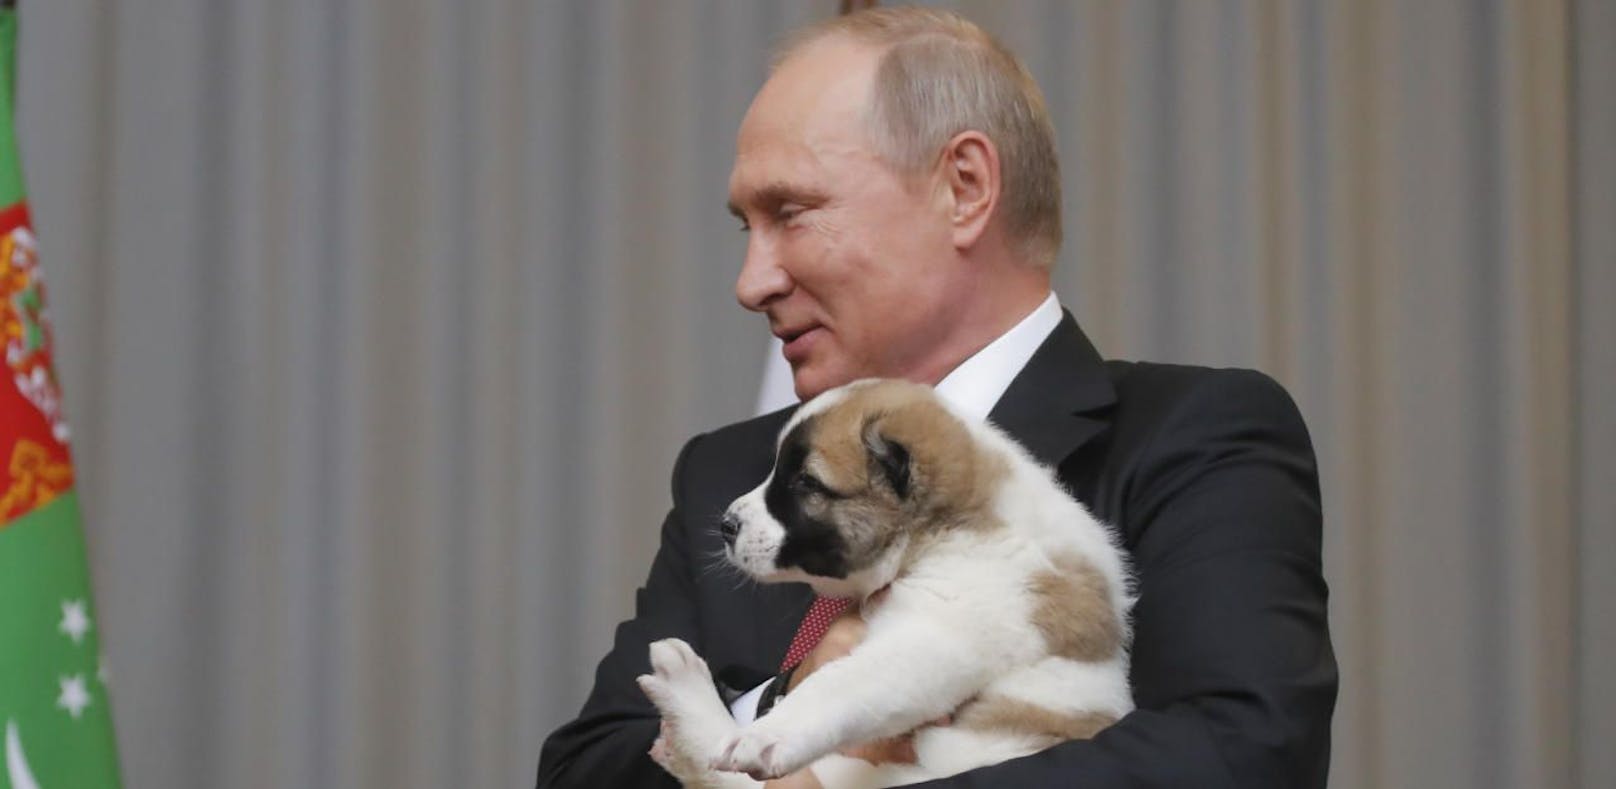 Geburtstags-Geschenk: Putin knuddelt Welpen